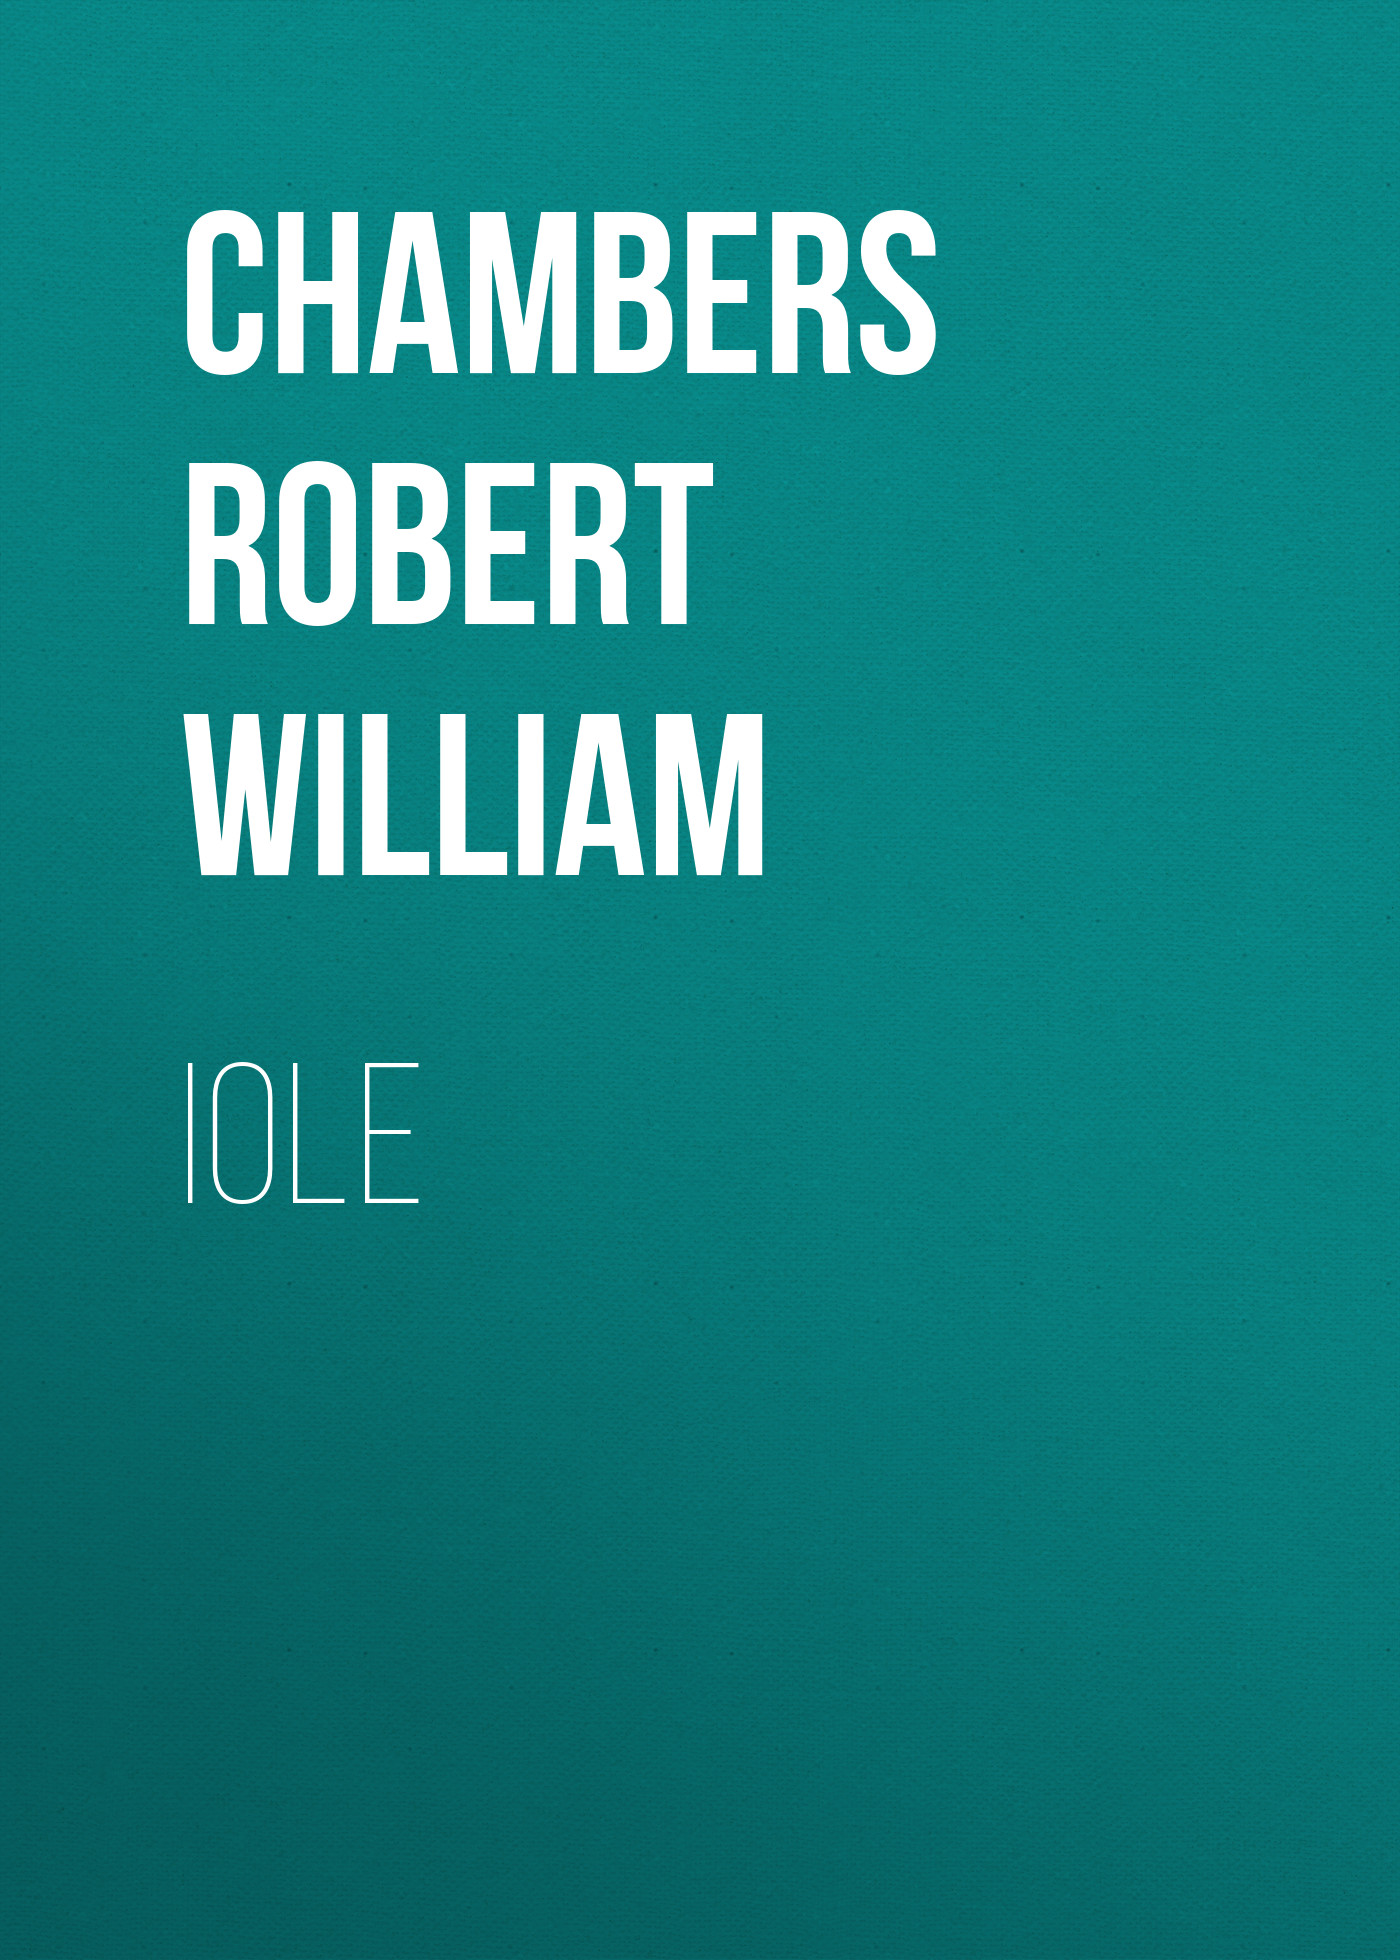 Книга Iole из серии , созданная Robert Chambers, может относится к жанру Зарубежная классика, Зарубежная старинная литература. Стоимость электронной книги Iole с идентификатором 36323932 составляет 0 руб.